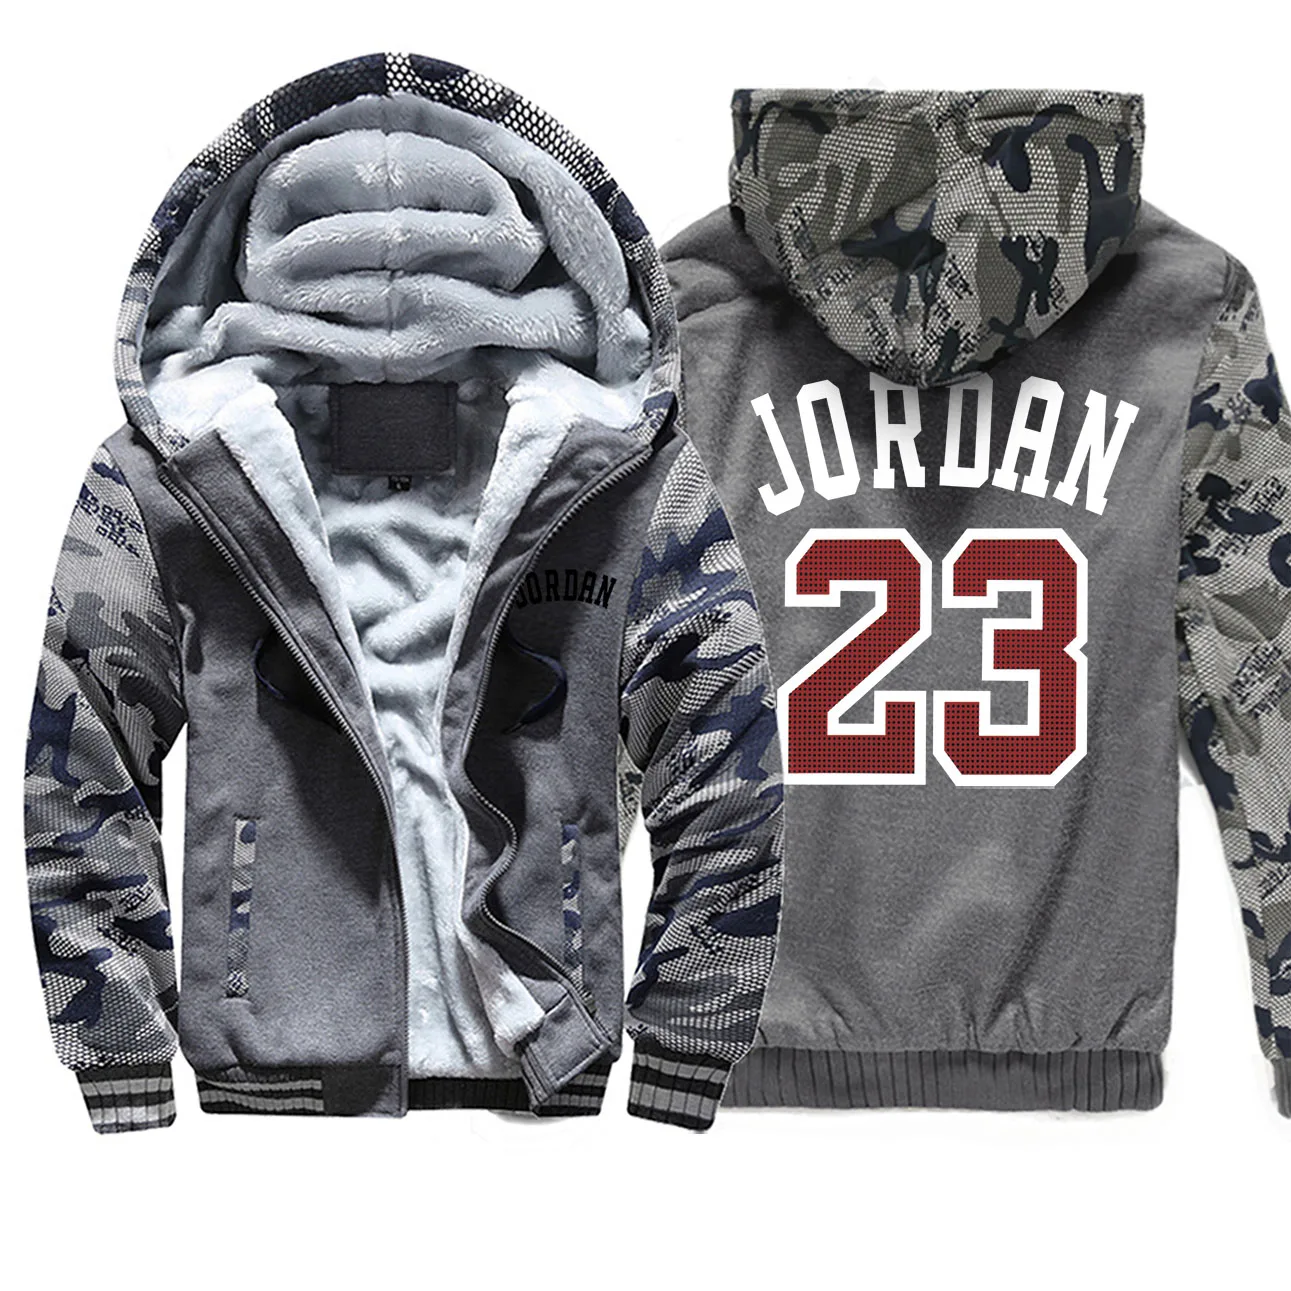 Jordan 23 мужские толстовки с буквенным принтом зимние утепленные мужские куртки камуфляжные пальто с рукавами стильная популярная верхняя мужская спортивная одежда - Цвет: Dark Gray 6